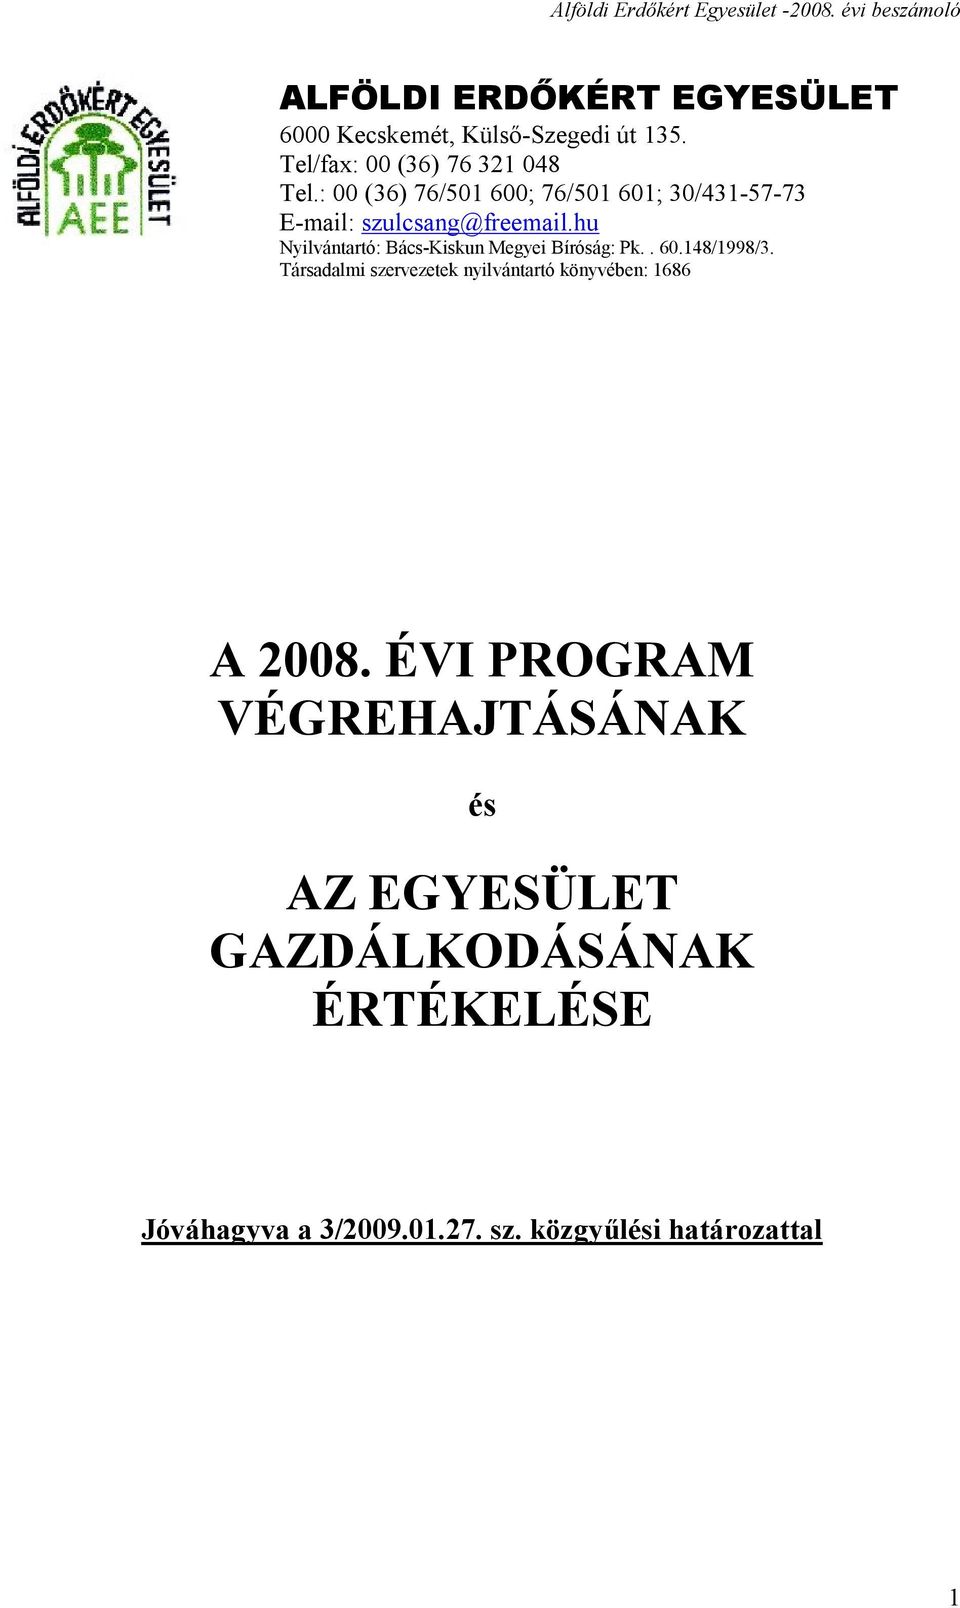 hu Nyilvántartó: Bács-Kiskun Megyei Bíróság: Pk.. 60.148/1998/3.